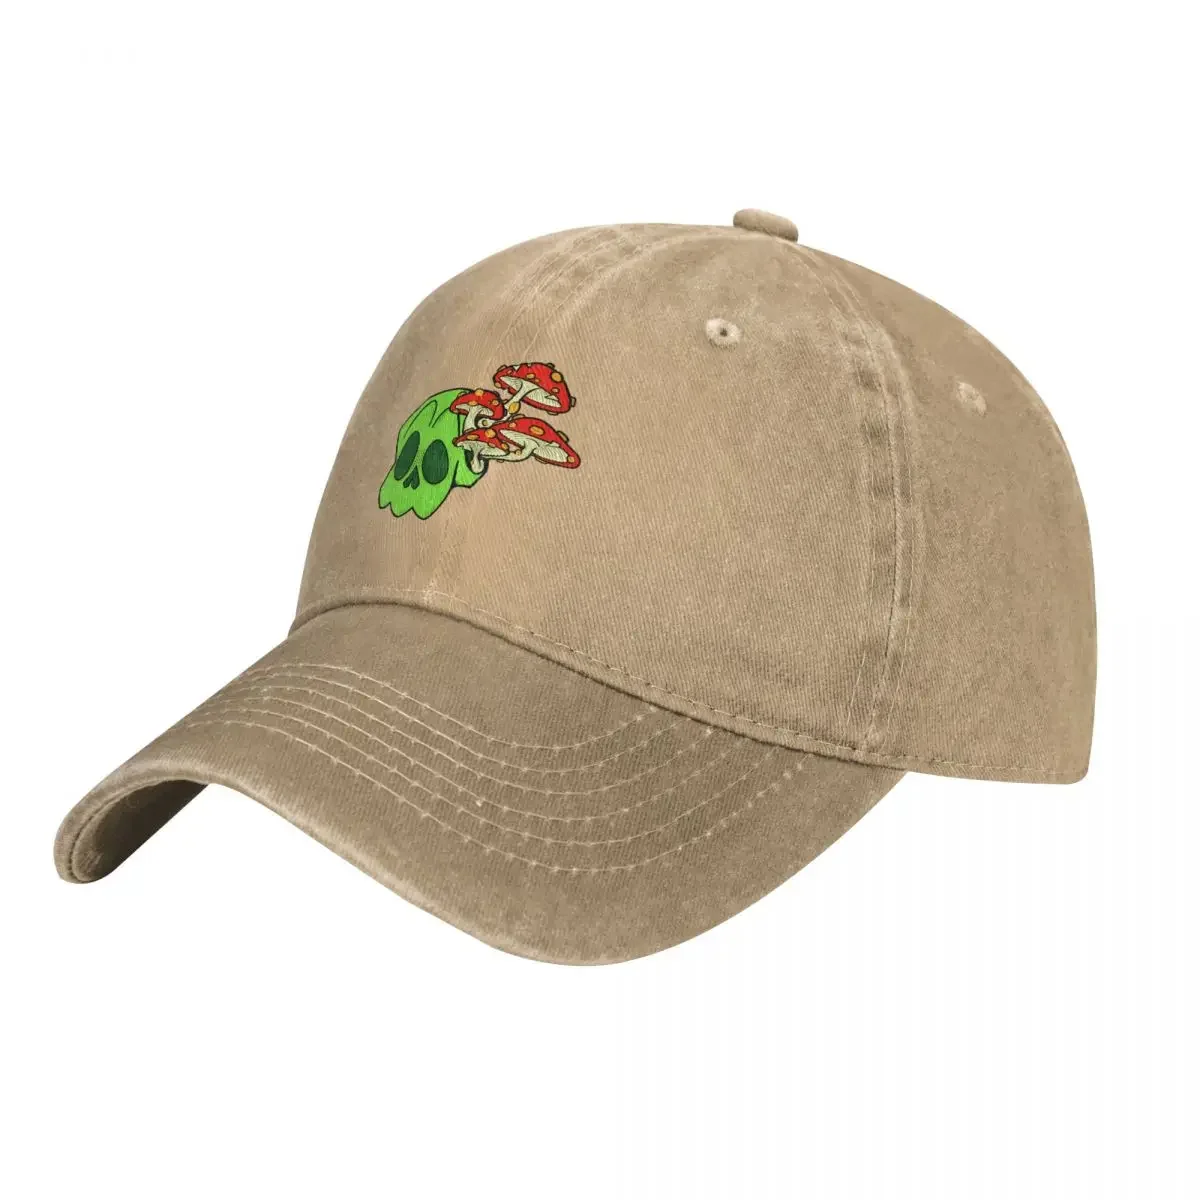 

Neon Green Calm Fantasy Mushroom Skull Cowboy Hat Trucker Hats Golf Cap Hat Women Men'S